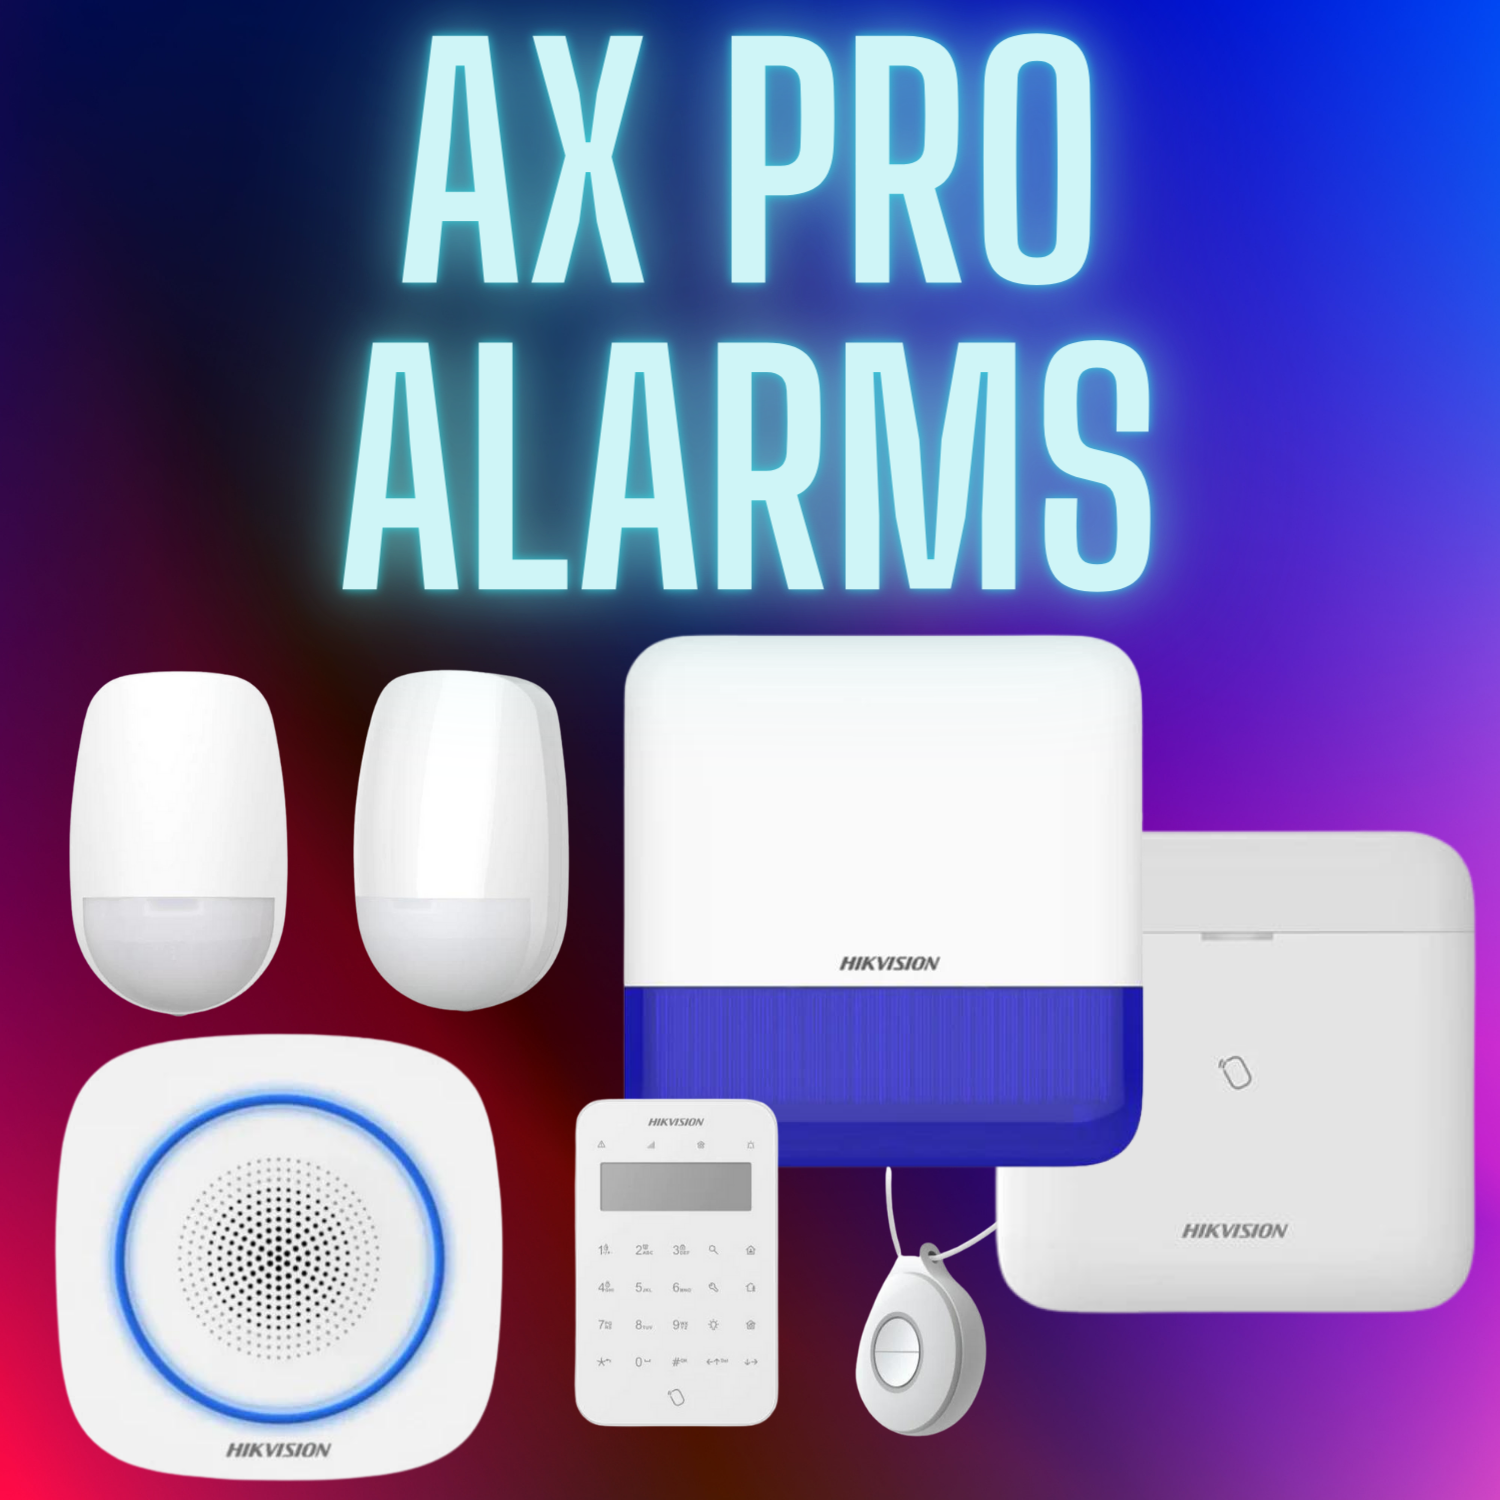 hikvision ax pro alarm